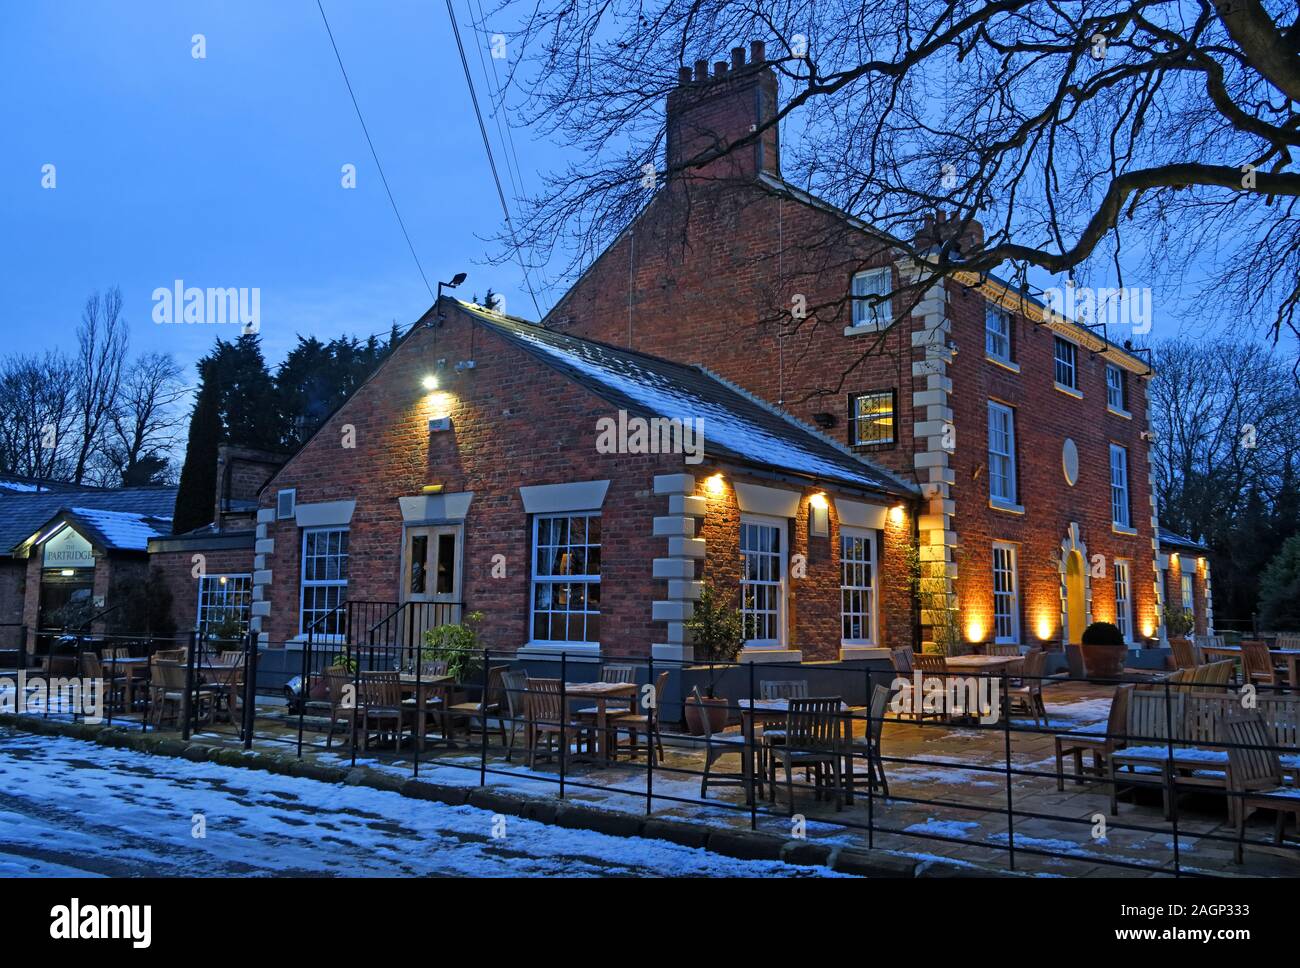 Le Partridge à Stretton, pub de pays, Stretton, Warrington , Cheshire, Angleterre, Royaume-Uni Banque D'Images